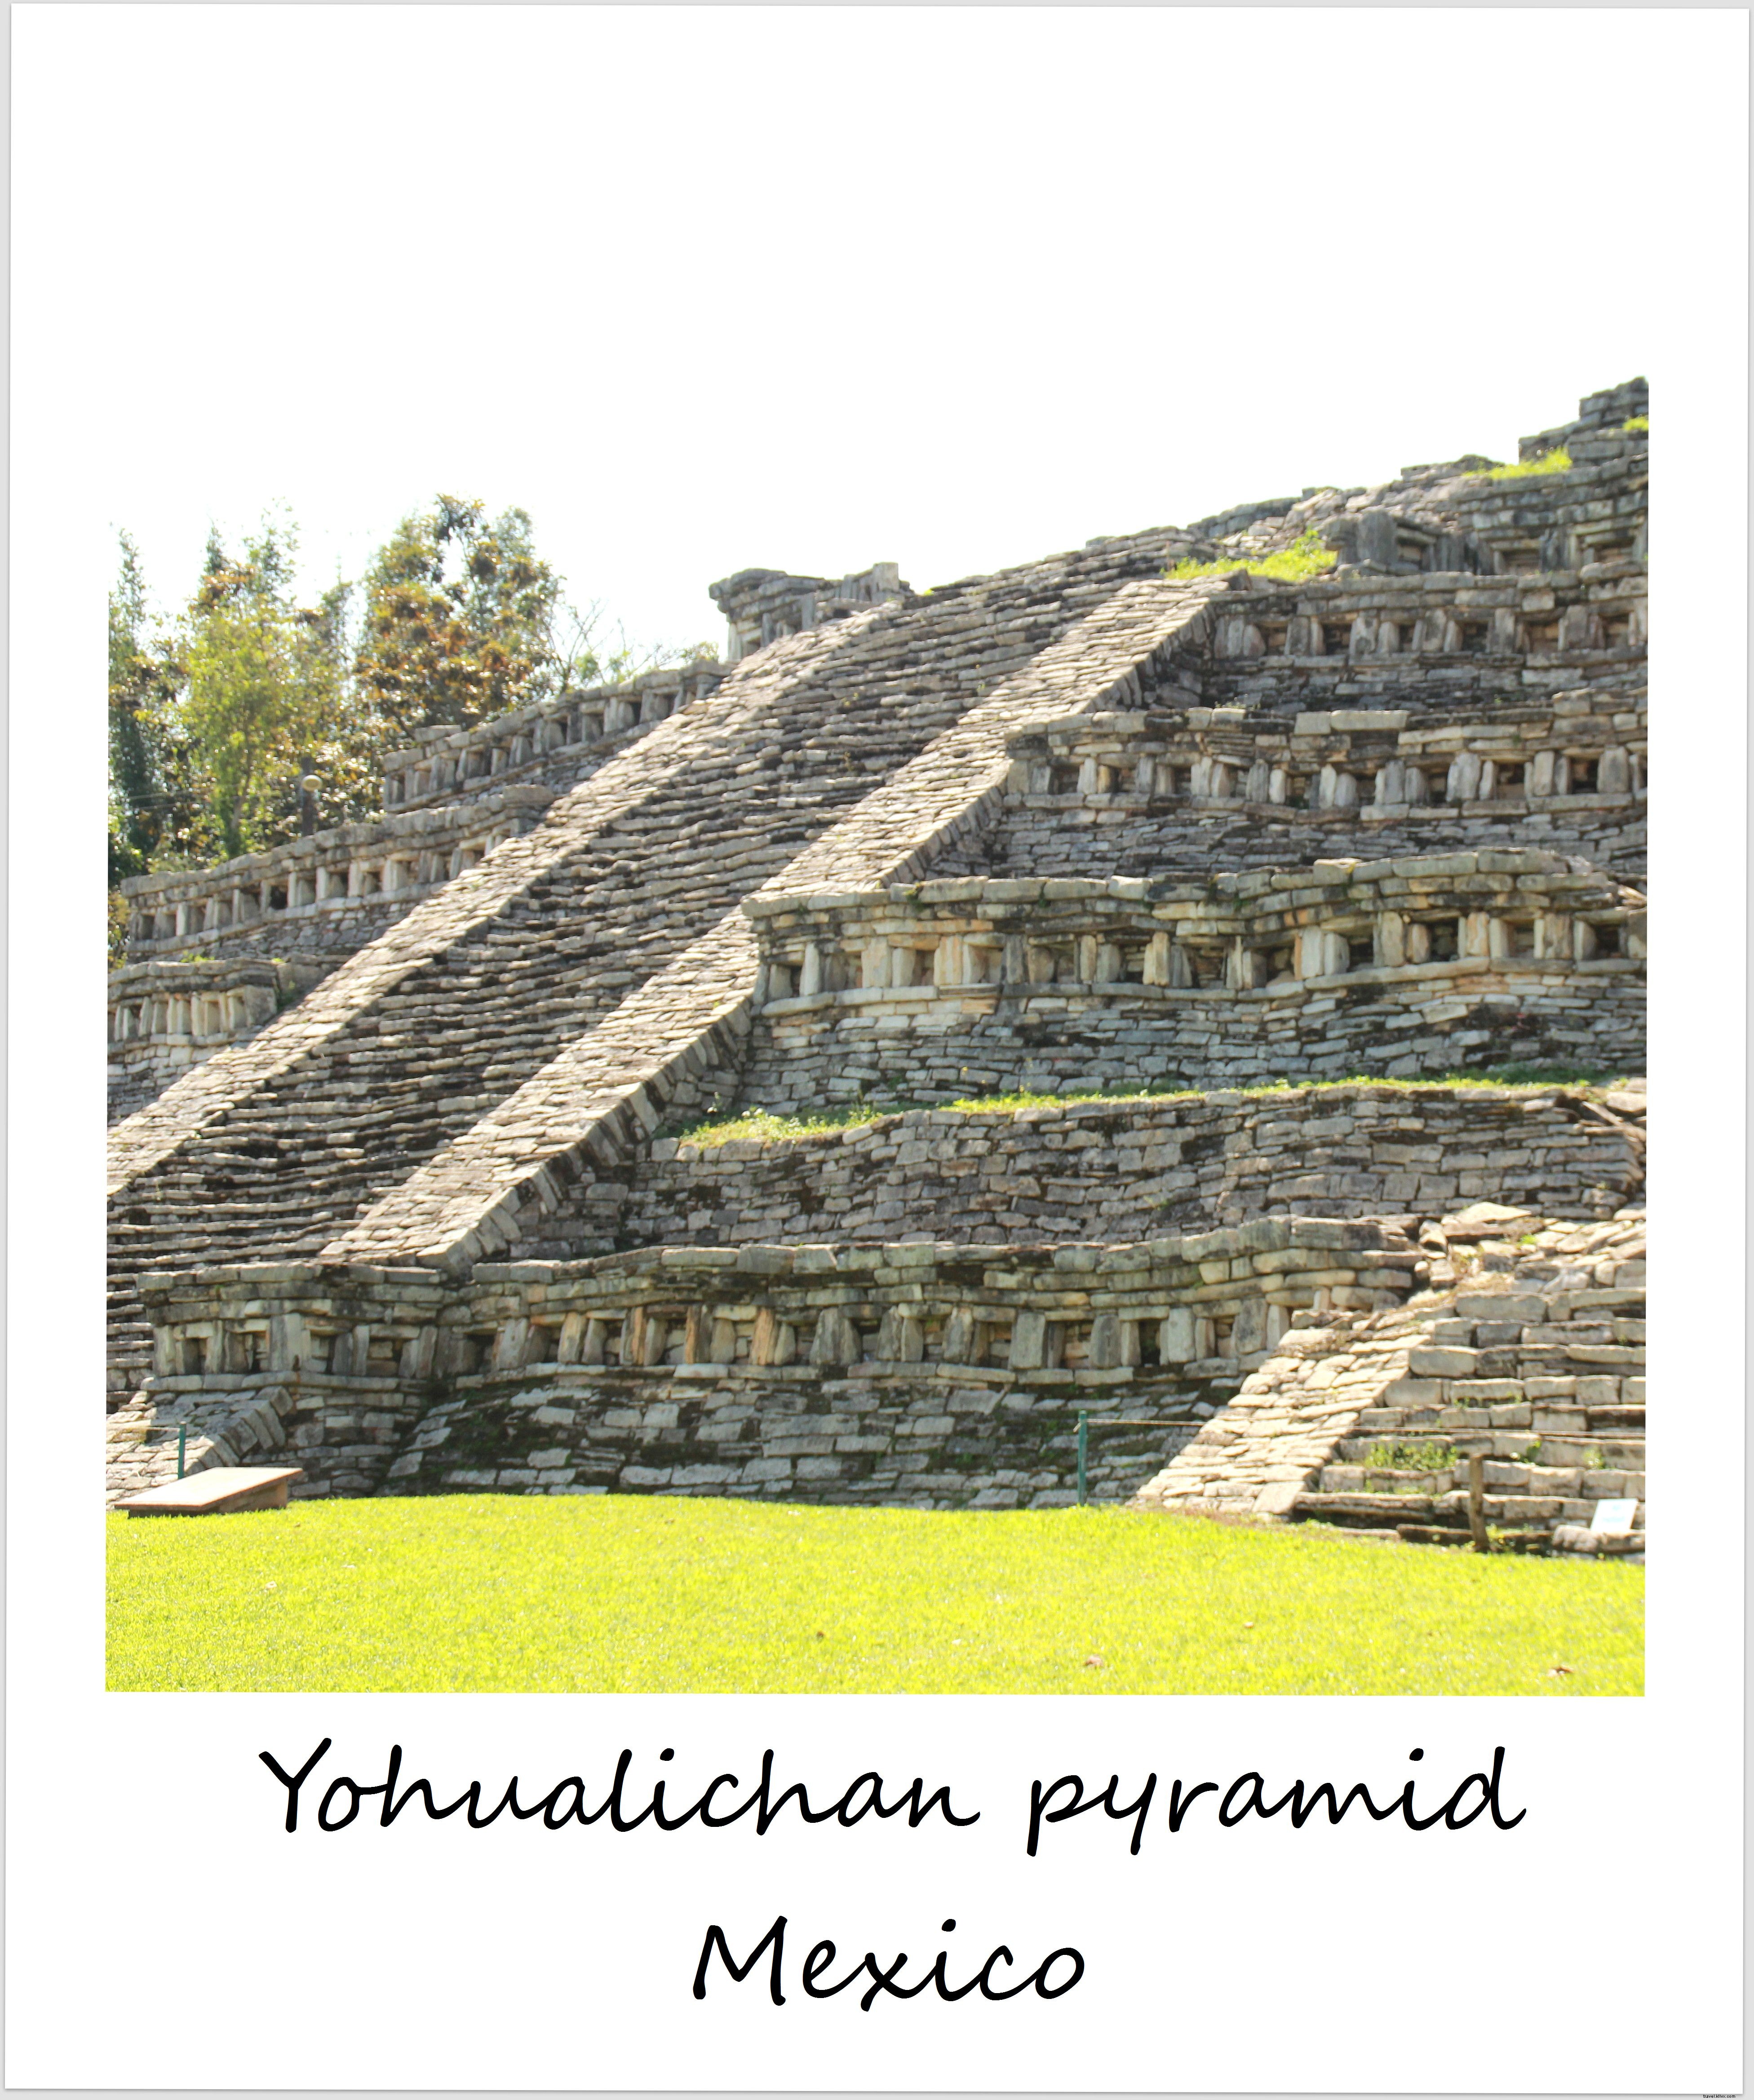 Polaroid minggu ini:Menjelajahi piramida kuno di Meksiko